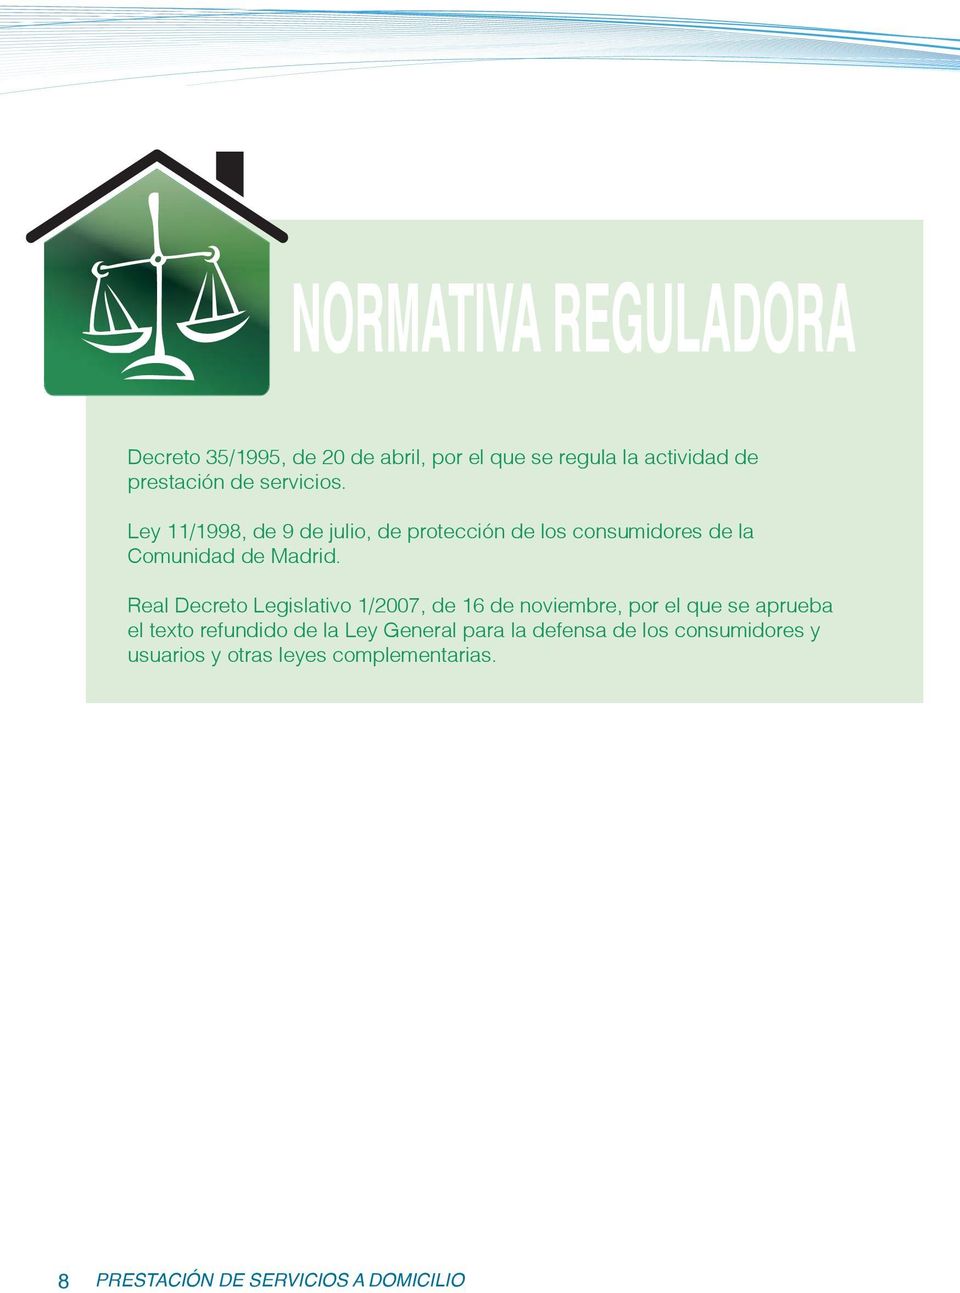 Real Decreto Legislativo 1/2007, de 16 de noviembre, por el que se aprueba el texto refundido de la